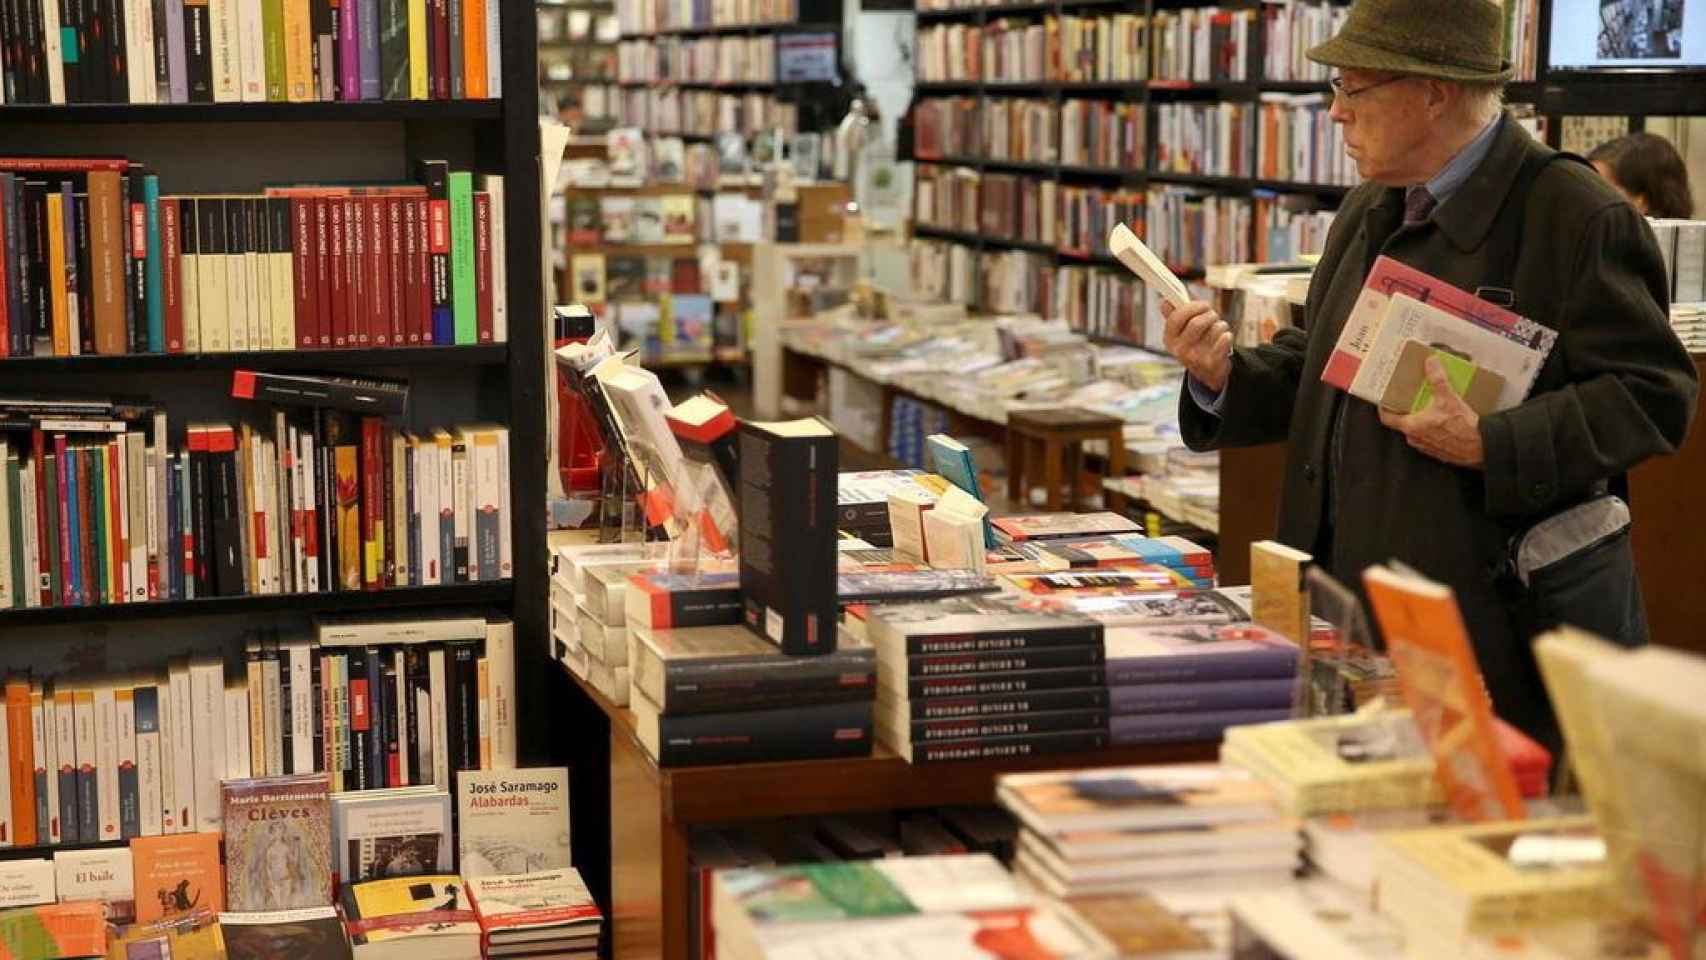 Un hombre escoge libros en una librería / EFE